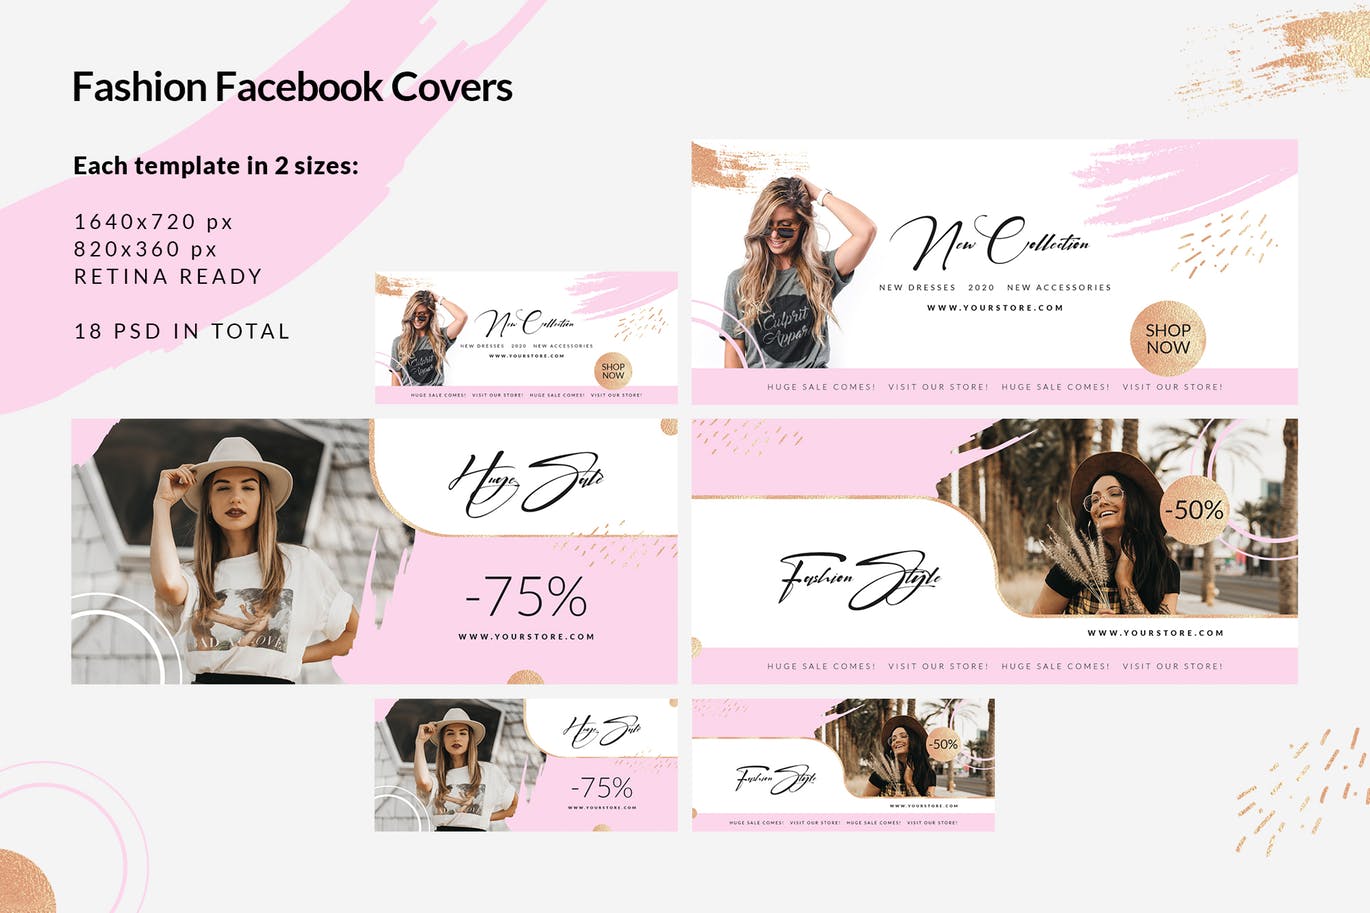 时尚品牌打折促销Facebook封面设计模板普贤居精选 Fashion Facebook Covers插图(2)